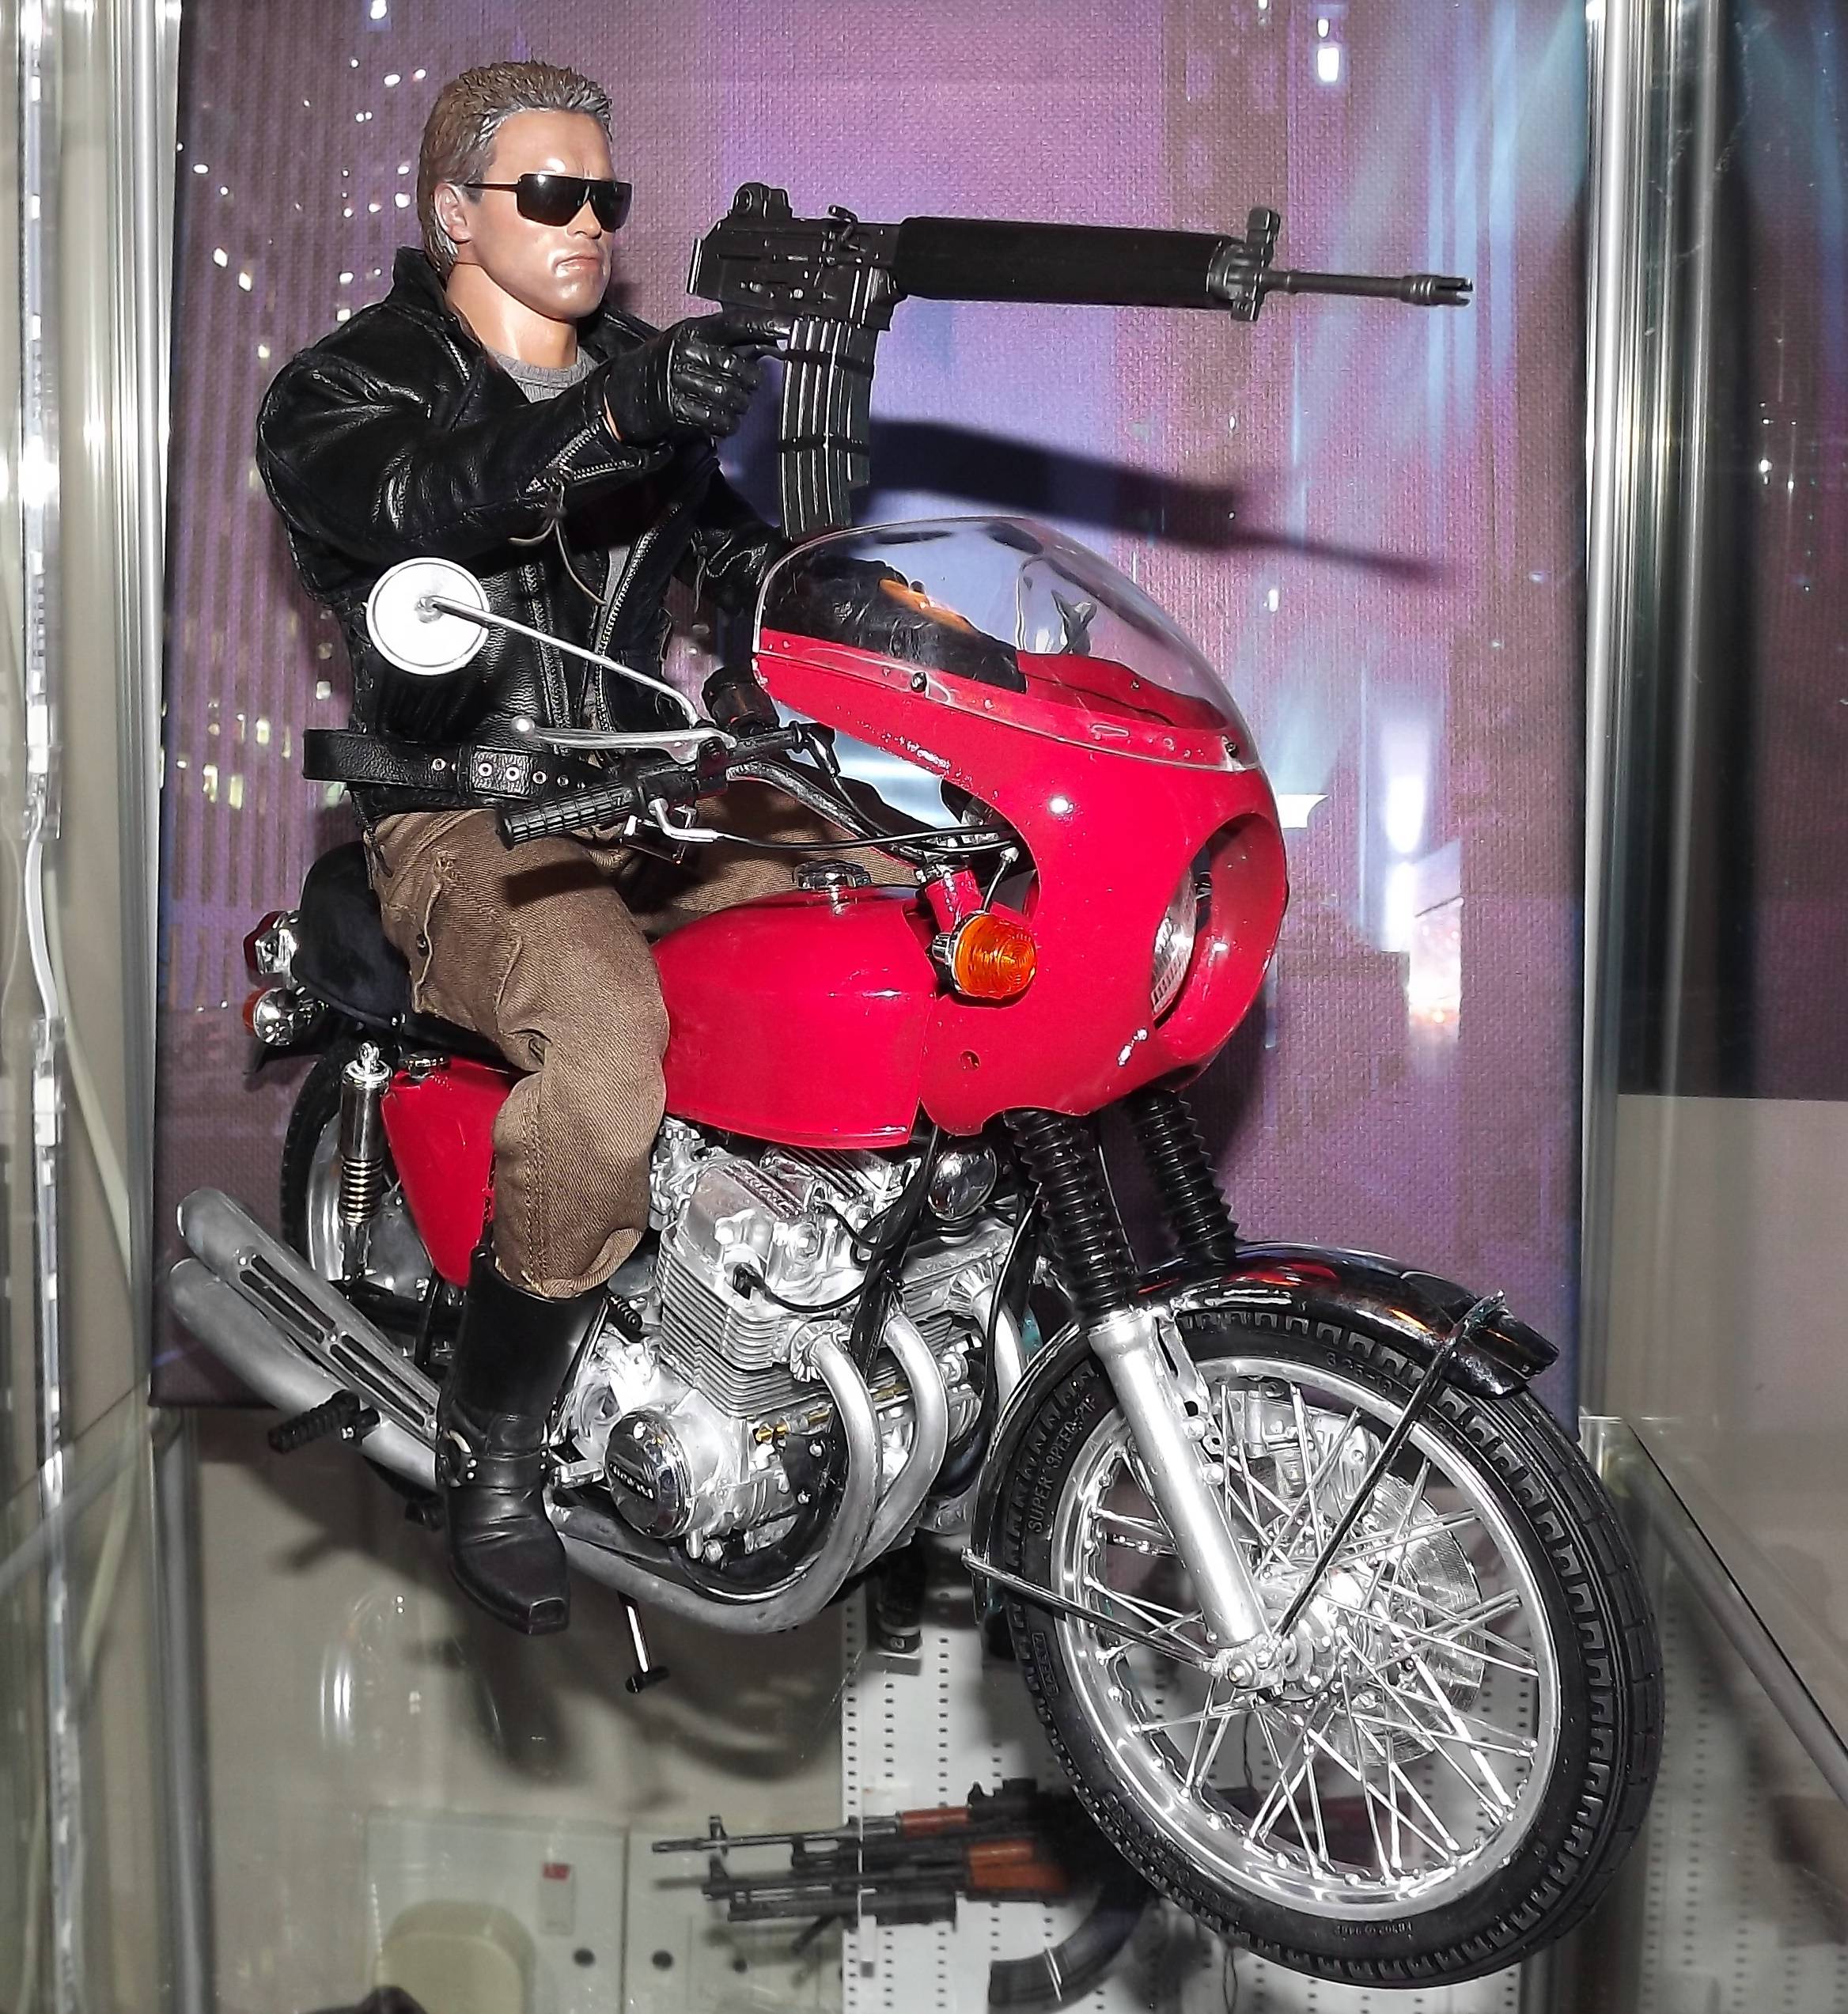 Honda CB750 Vier model speelgoed uit de eerste Terminator film